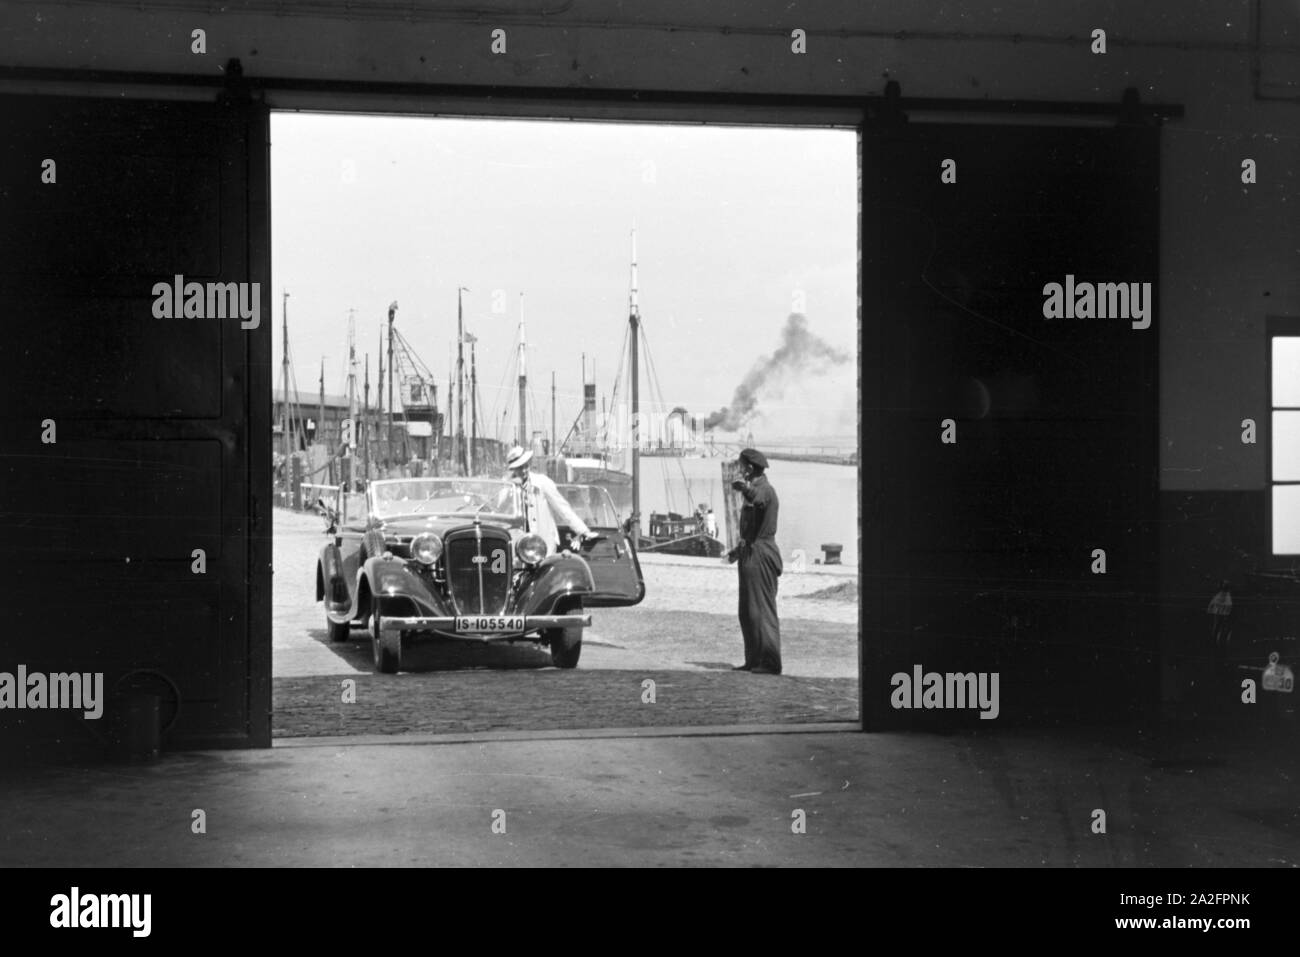 Eine Frau fährt ihr Audi Cabrio in eine der Garagen am Meer in Norddeich, Deutschland 1930er Jahre. Una donna alla guida la sua Audi convertibel in uno dei garage di Norddeich, Germania 1930s. Foto Stock